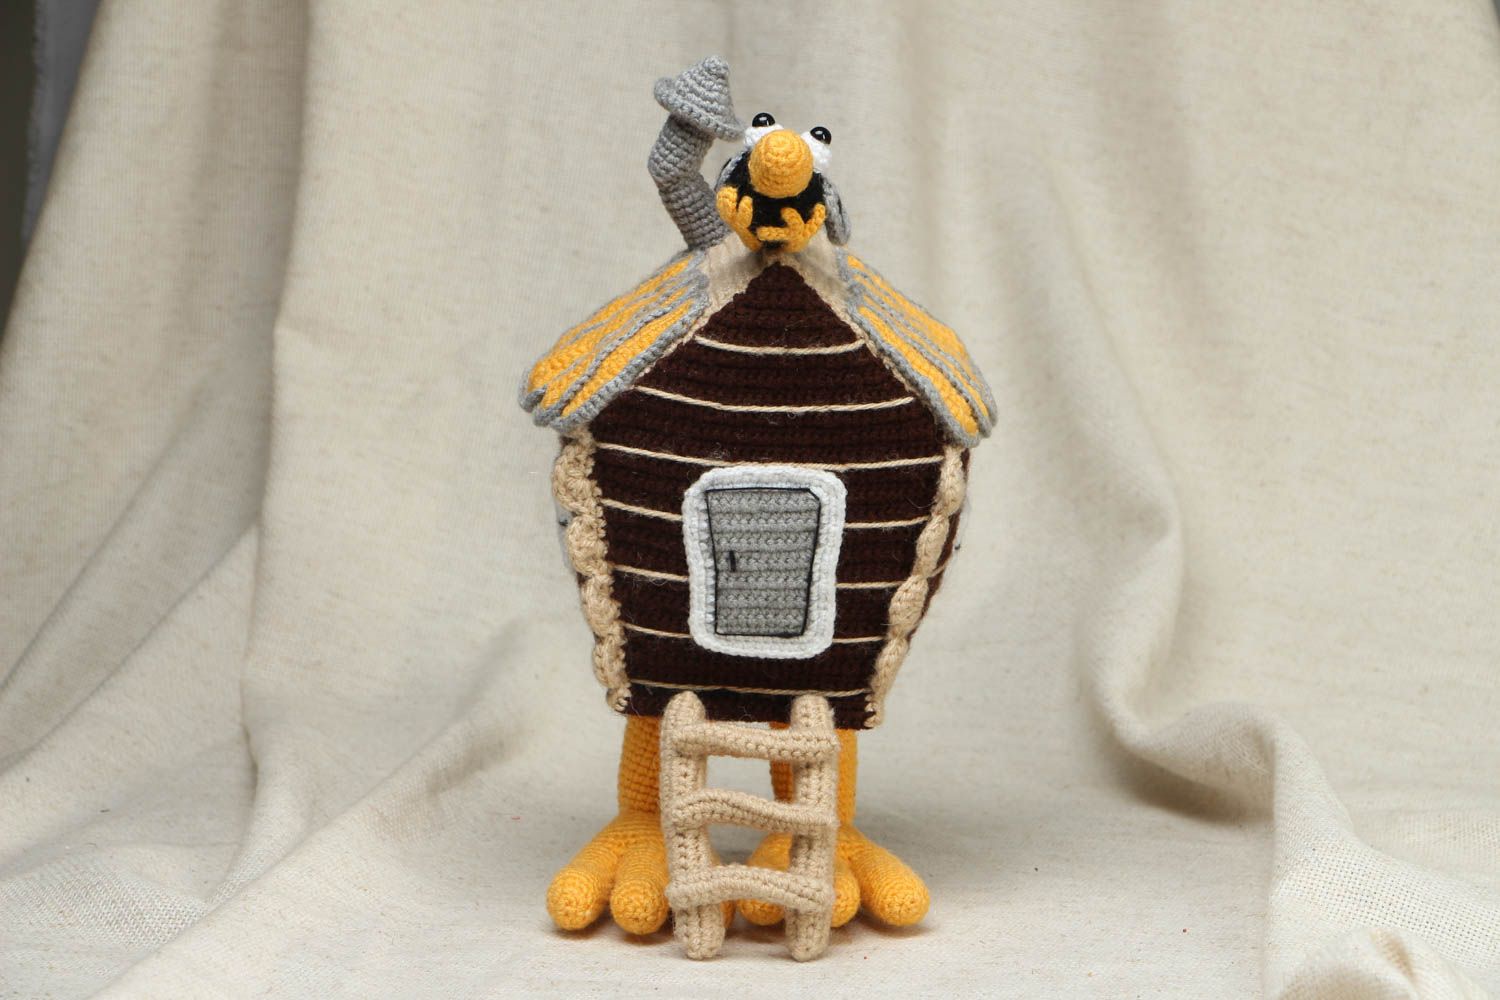 Designer crochet toy Hut on Chicken Legs photo 1